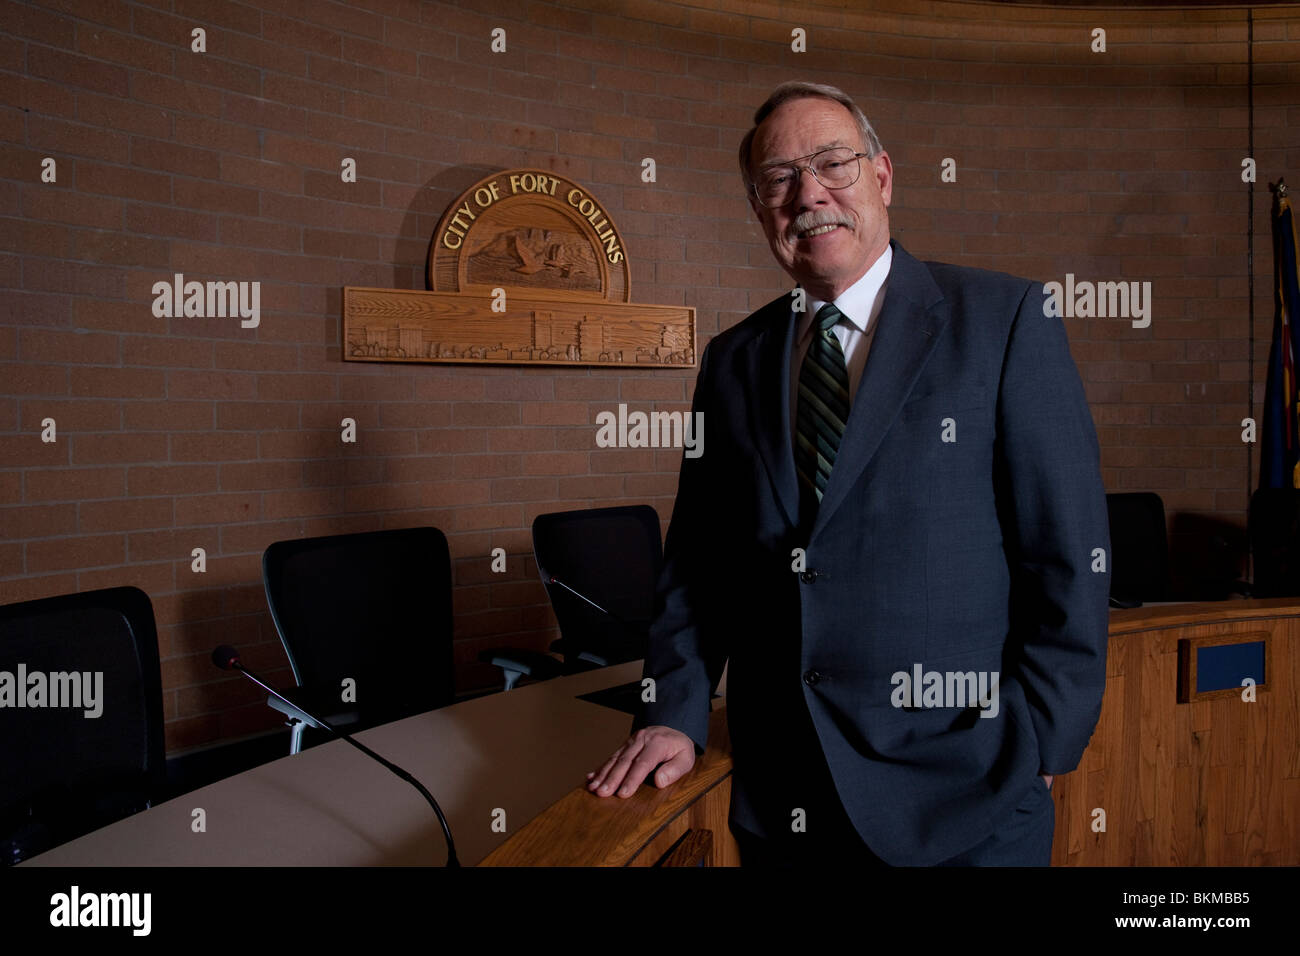 Retrato de la ciudad de Fort Collins, Colorado, Alcalde Doug Huchinson Foto de stock